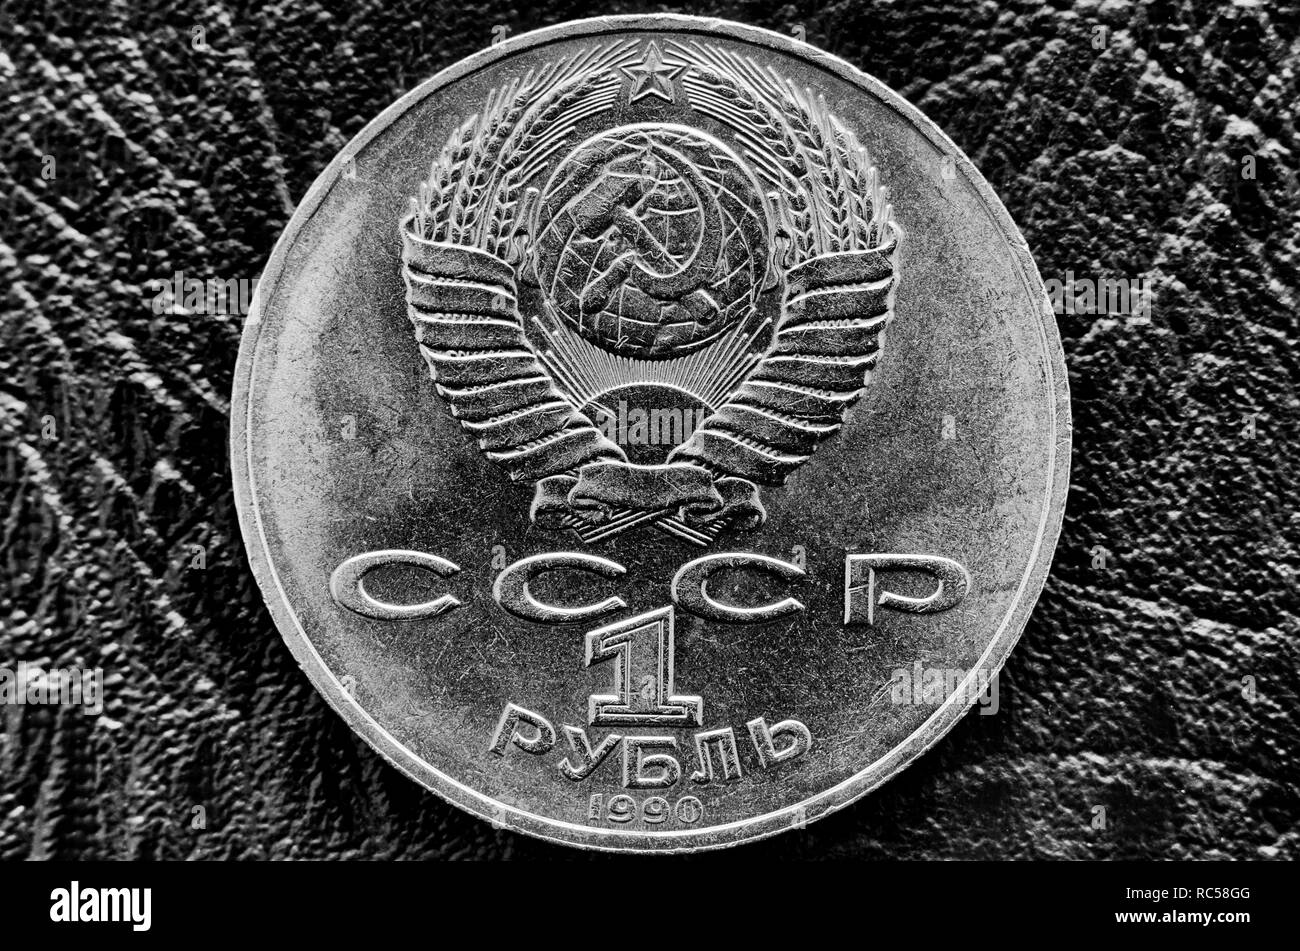 Sowjetische Rubel mit dem Emblem der Sowjetunion und der Inschrift in einem Russischen "Rubel" und "UDSSR" in Schwarz und Weiß Stilisierung Stockfoto